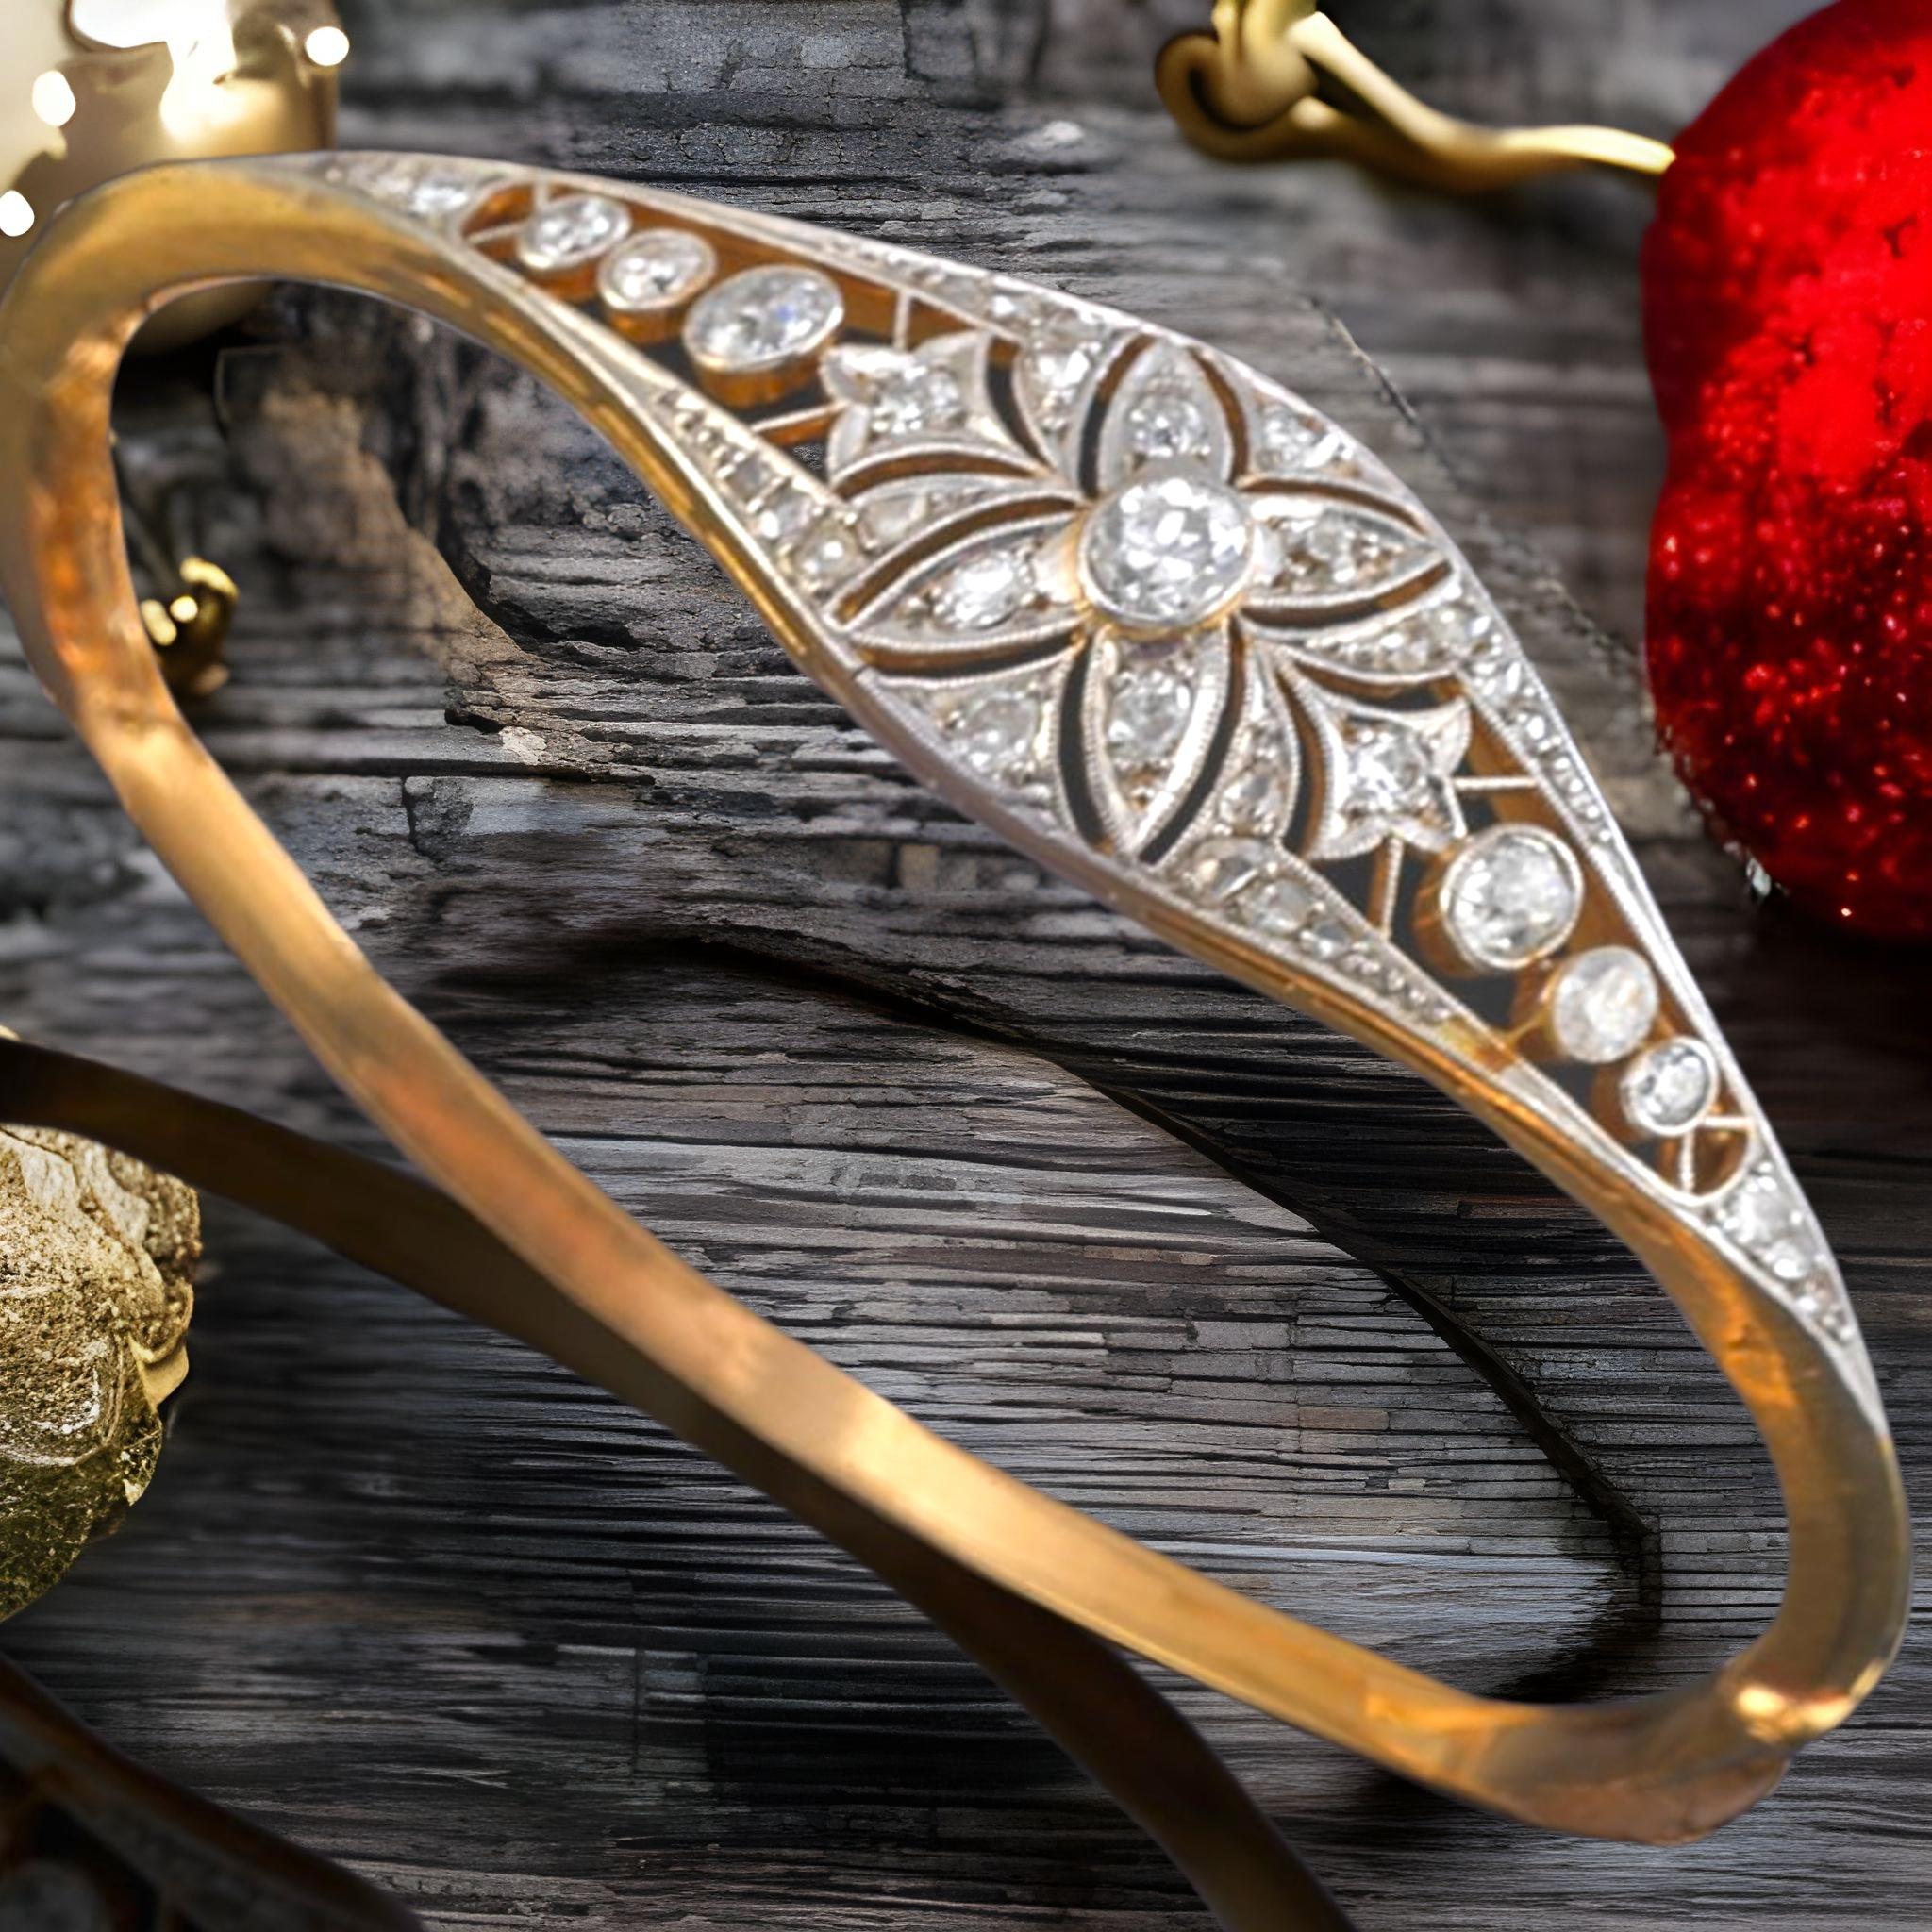 ANTIQUE EDWARDIAN DIAMOND BANGLE BRACELET (1901-1915)

Charmant bracelet-bracelet édouardien en or jaune 18 carats et platine. Le bracelet est en platine incrusté de diamants sur une bande d'or effilée. Le point central de ce bracelet est un design